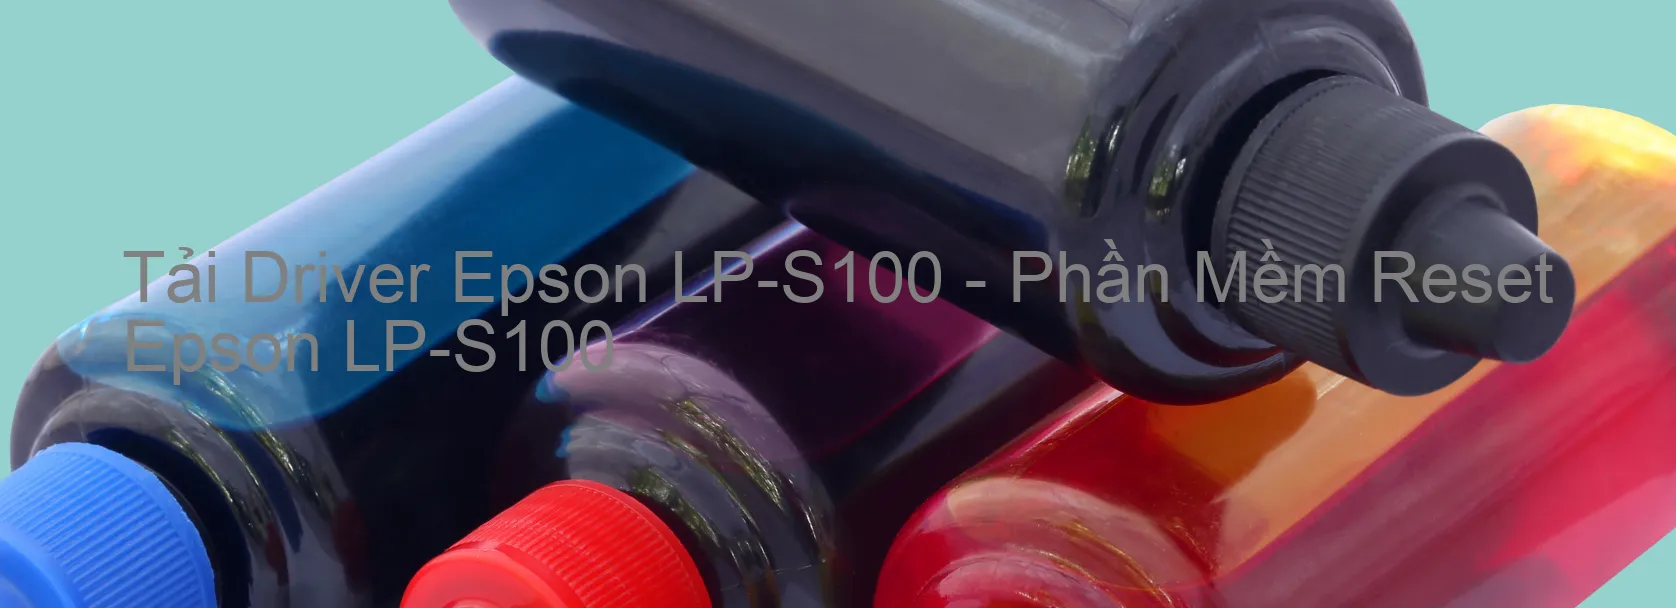 Driver Epson LP-S100, Phần Mềm Reset Epson LP-S100